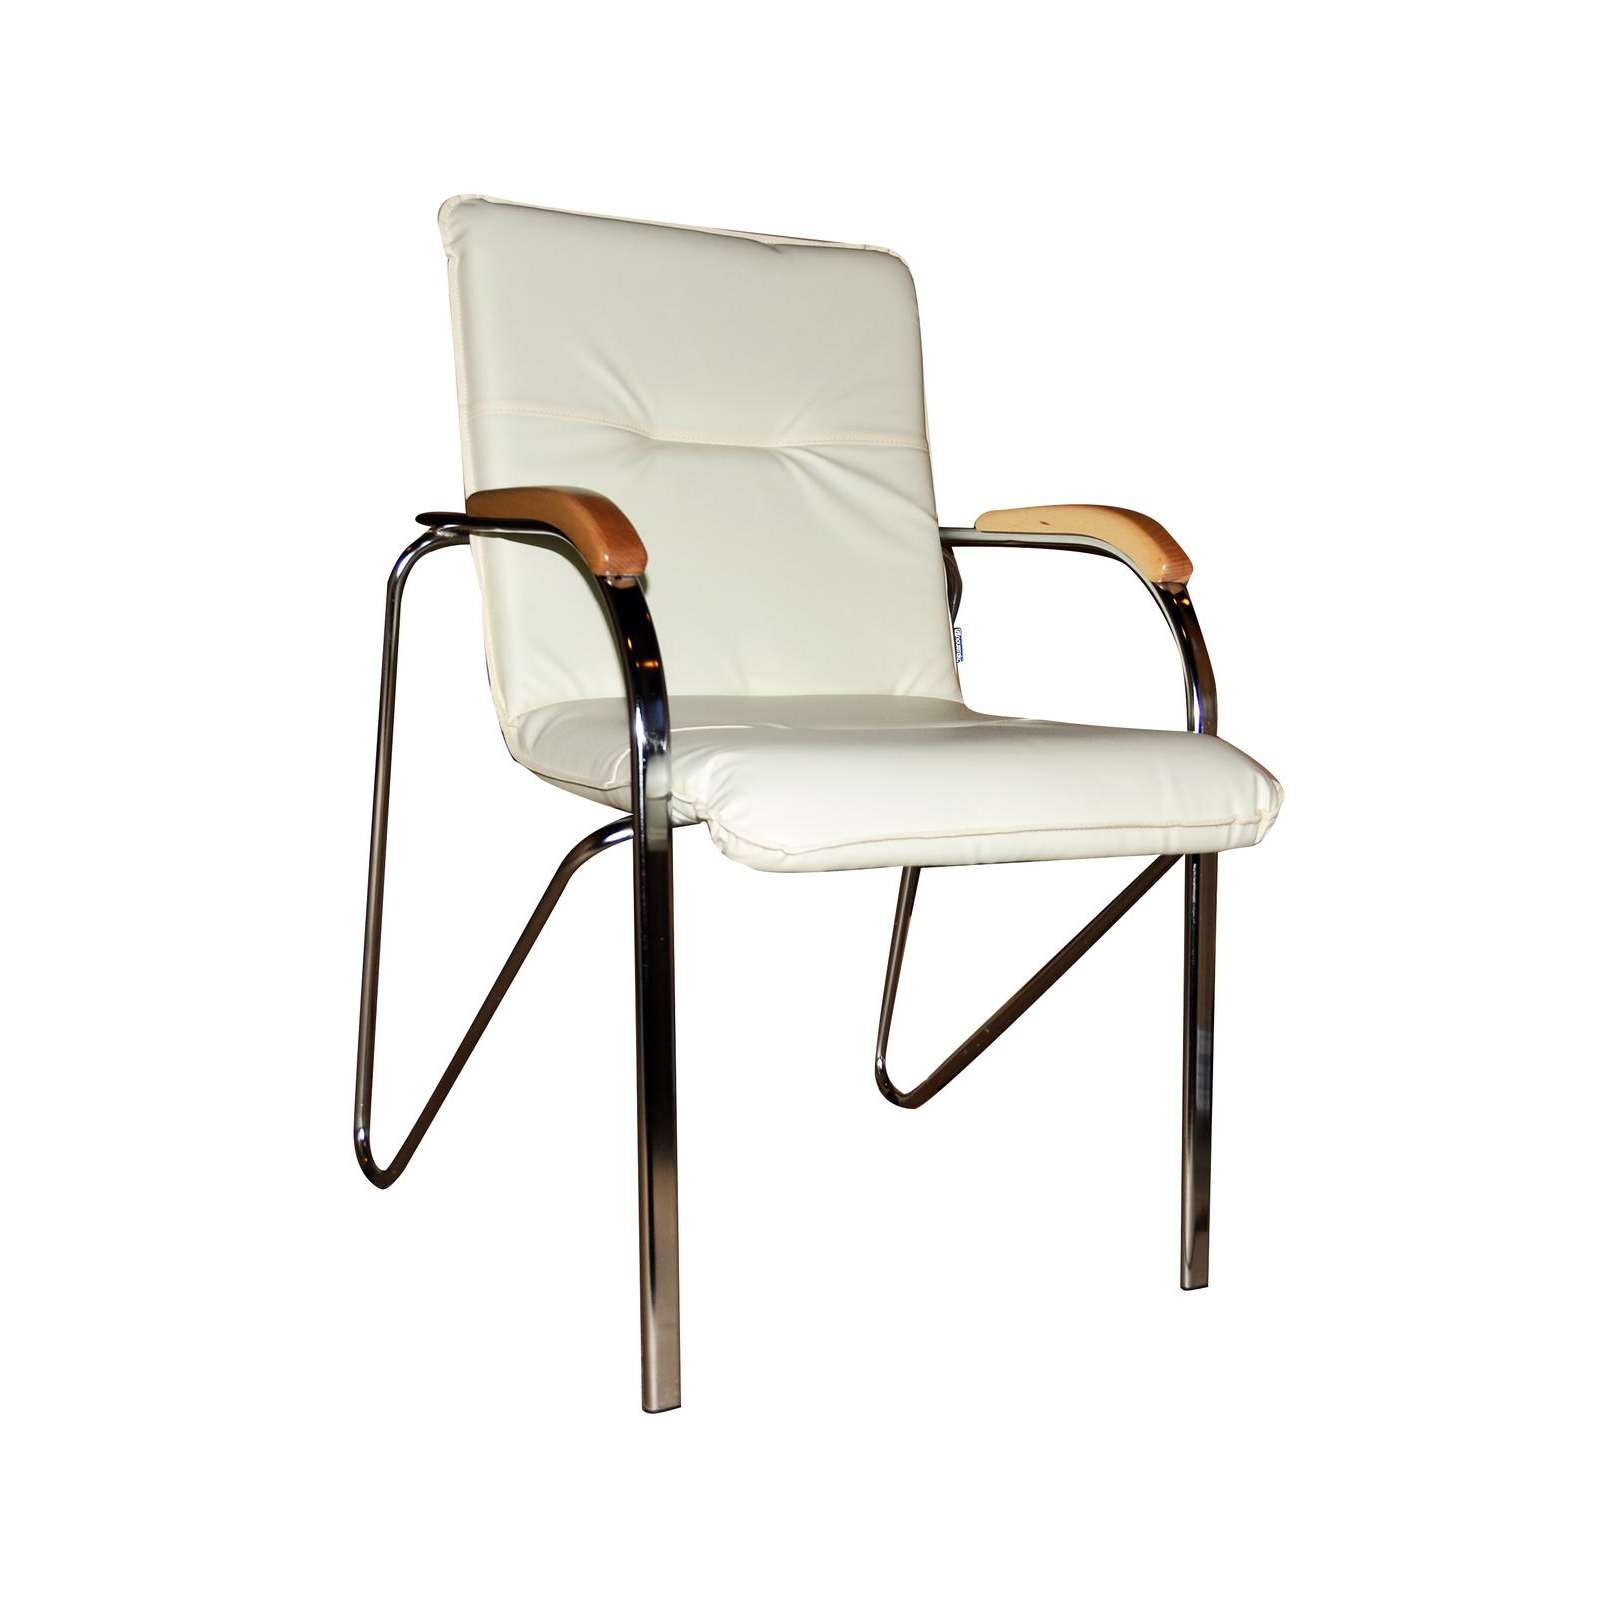 Офісний стілець Примтекс плюс Samba chrome wood 1.007 S-82 Beige (Samba chrome wood 1.007 S-82)